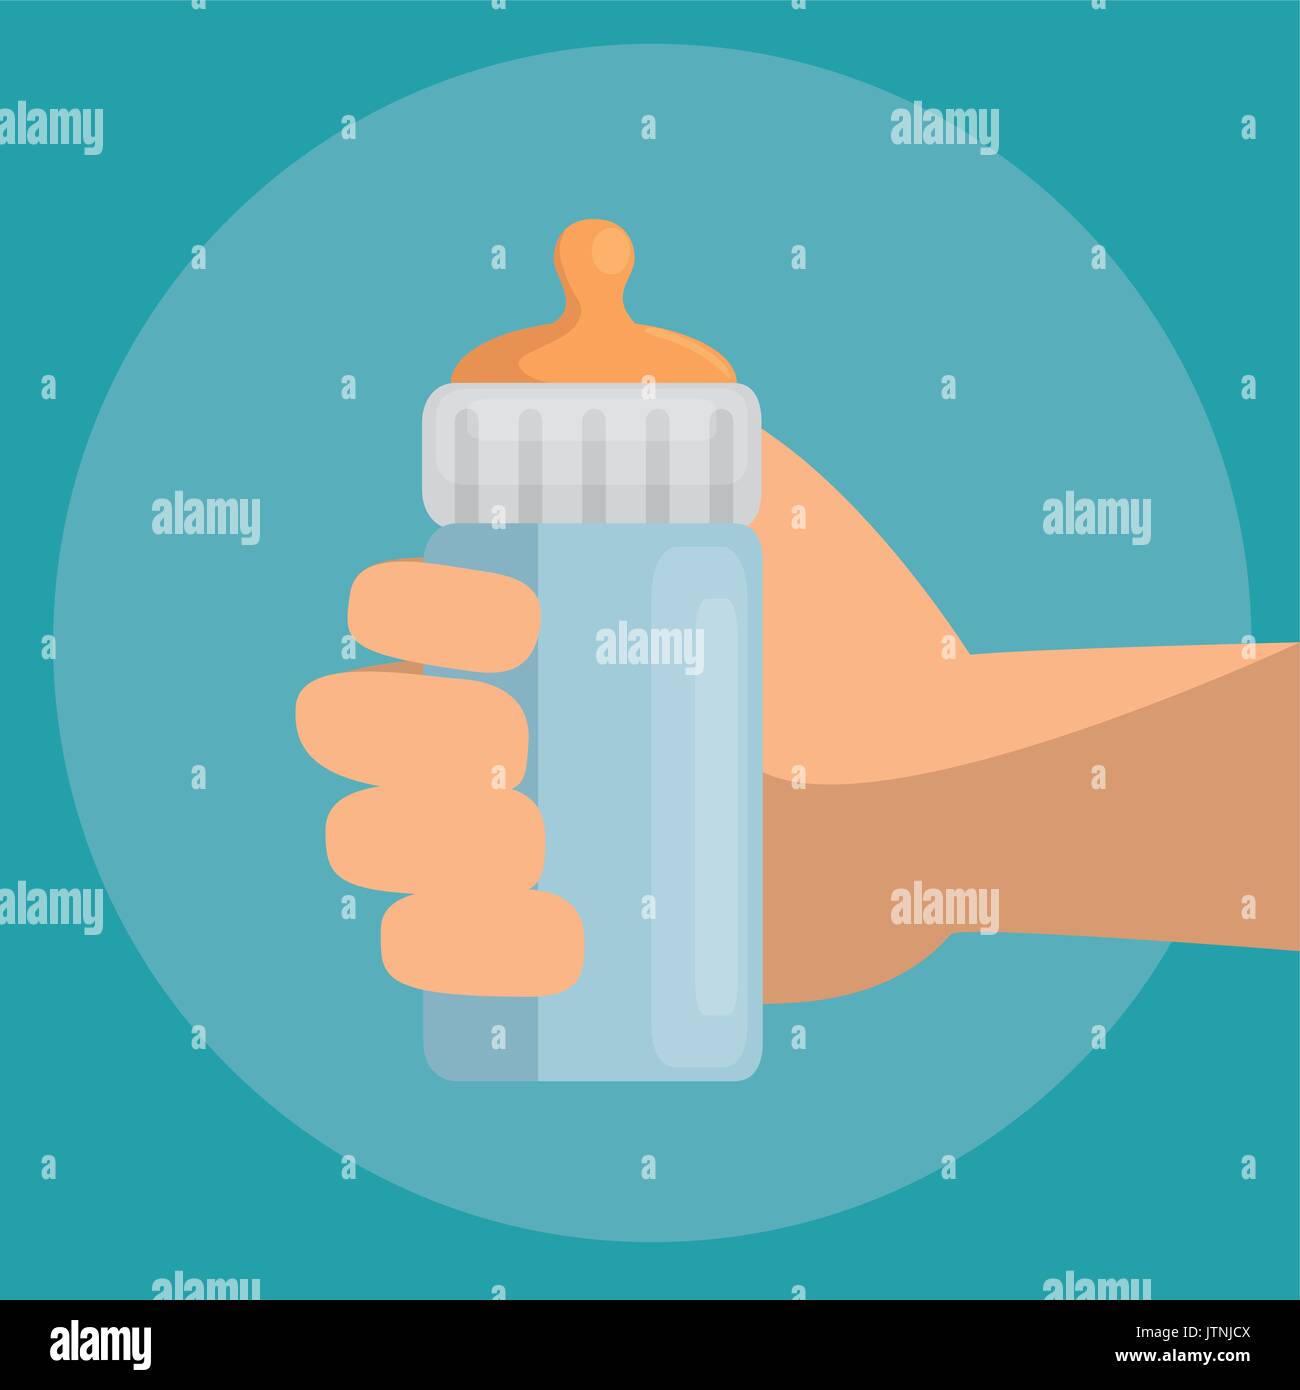 baby bottle icon Stock Vector Image & Art - Alamy